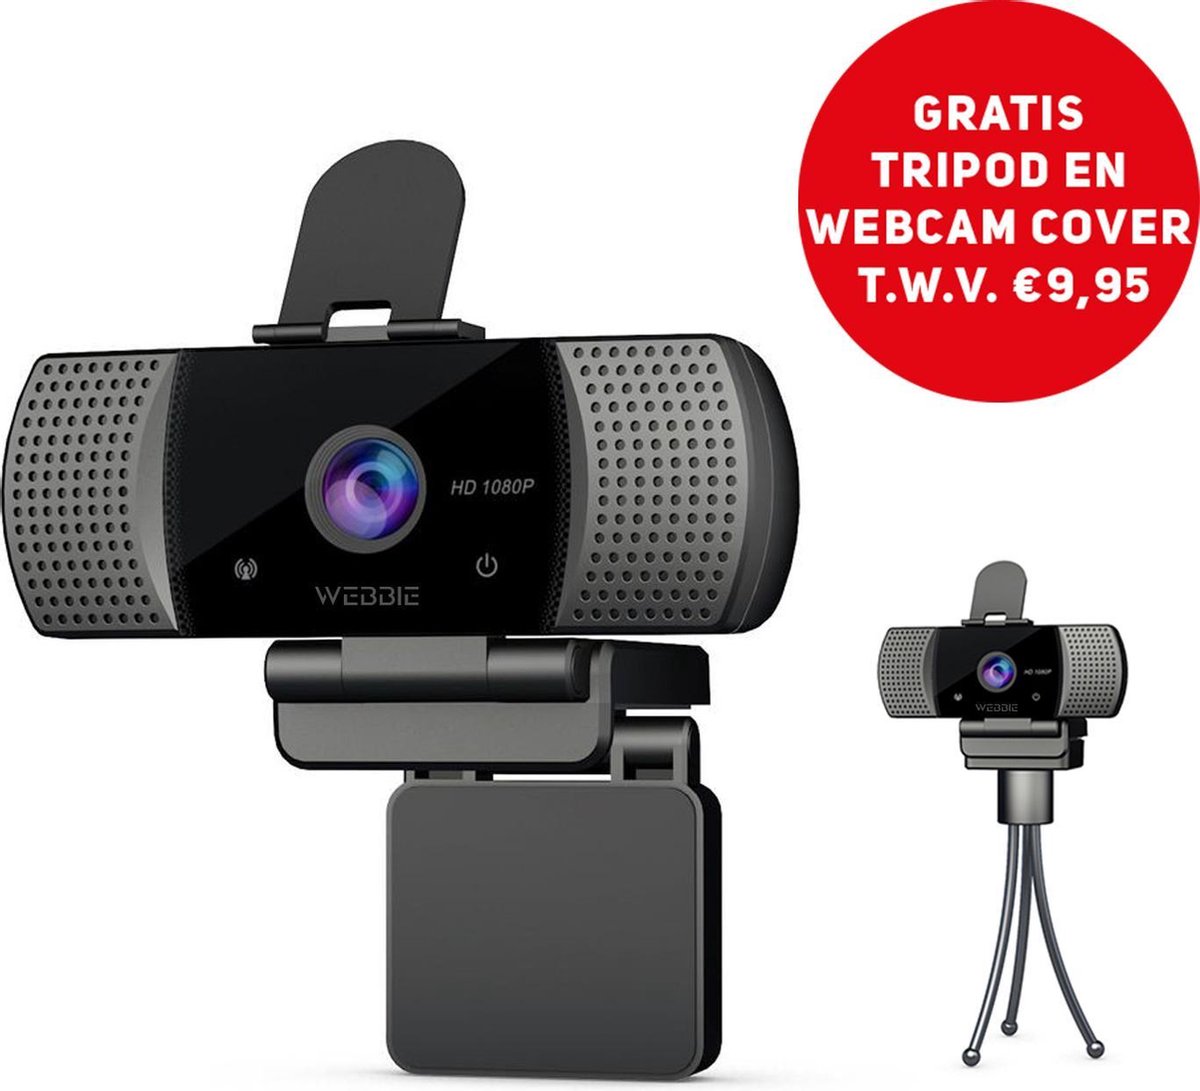 Webbie Webcam Voor PC- Webcam Met Microfoon - Webcams - Thuiswerken - Full HD 1080P Voor Helder Beeld en Geluid - Geschikt voor Windows en Mac - Inclusief Gratis Tripod en Webcam Cover